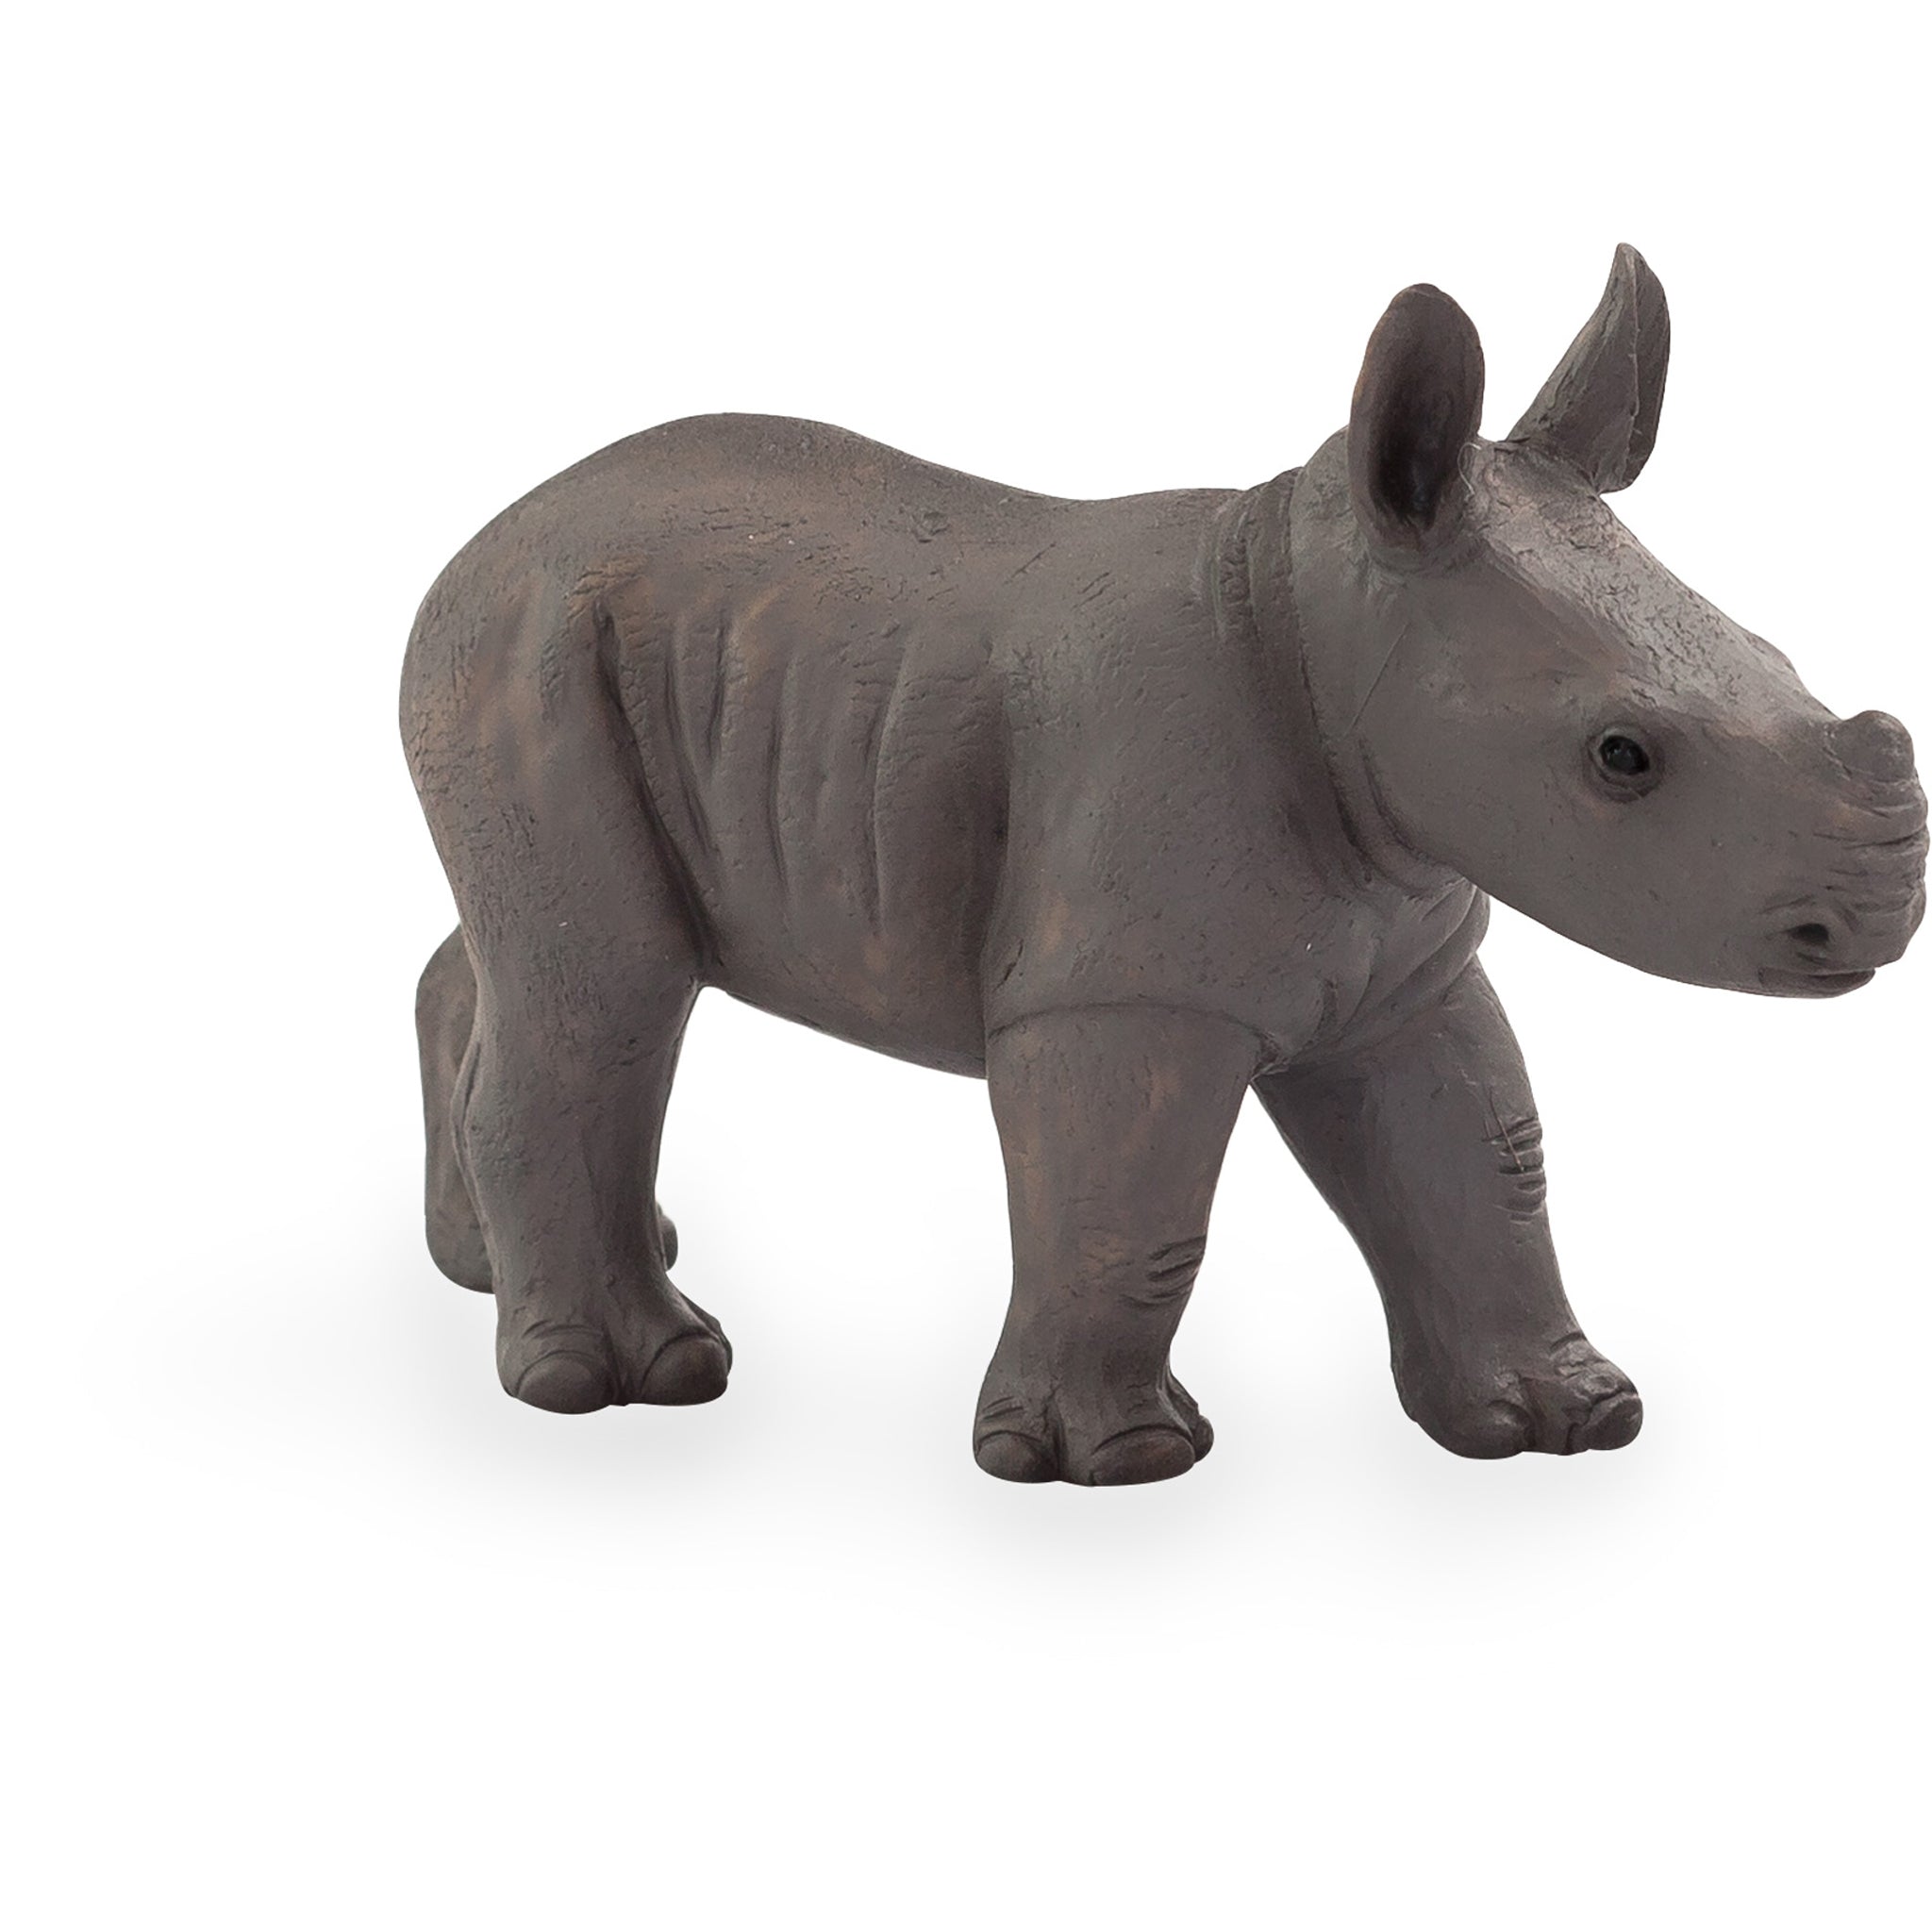 Rhino Baby – Hauck North America